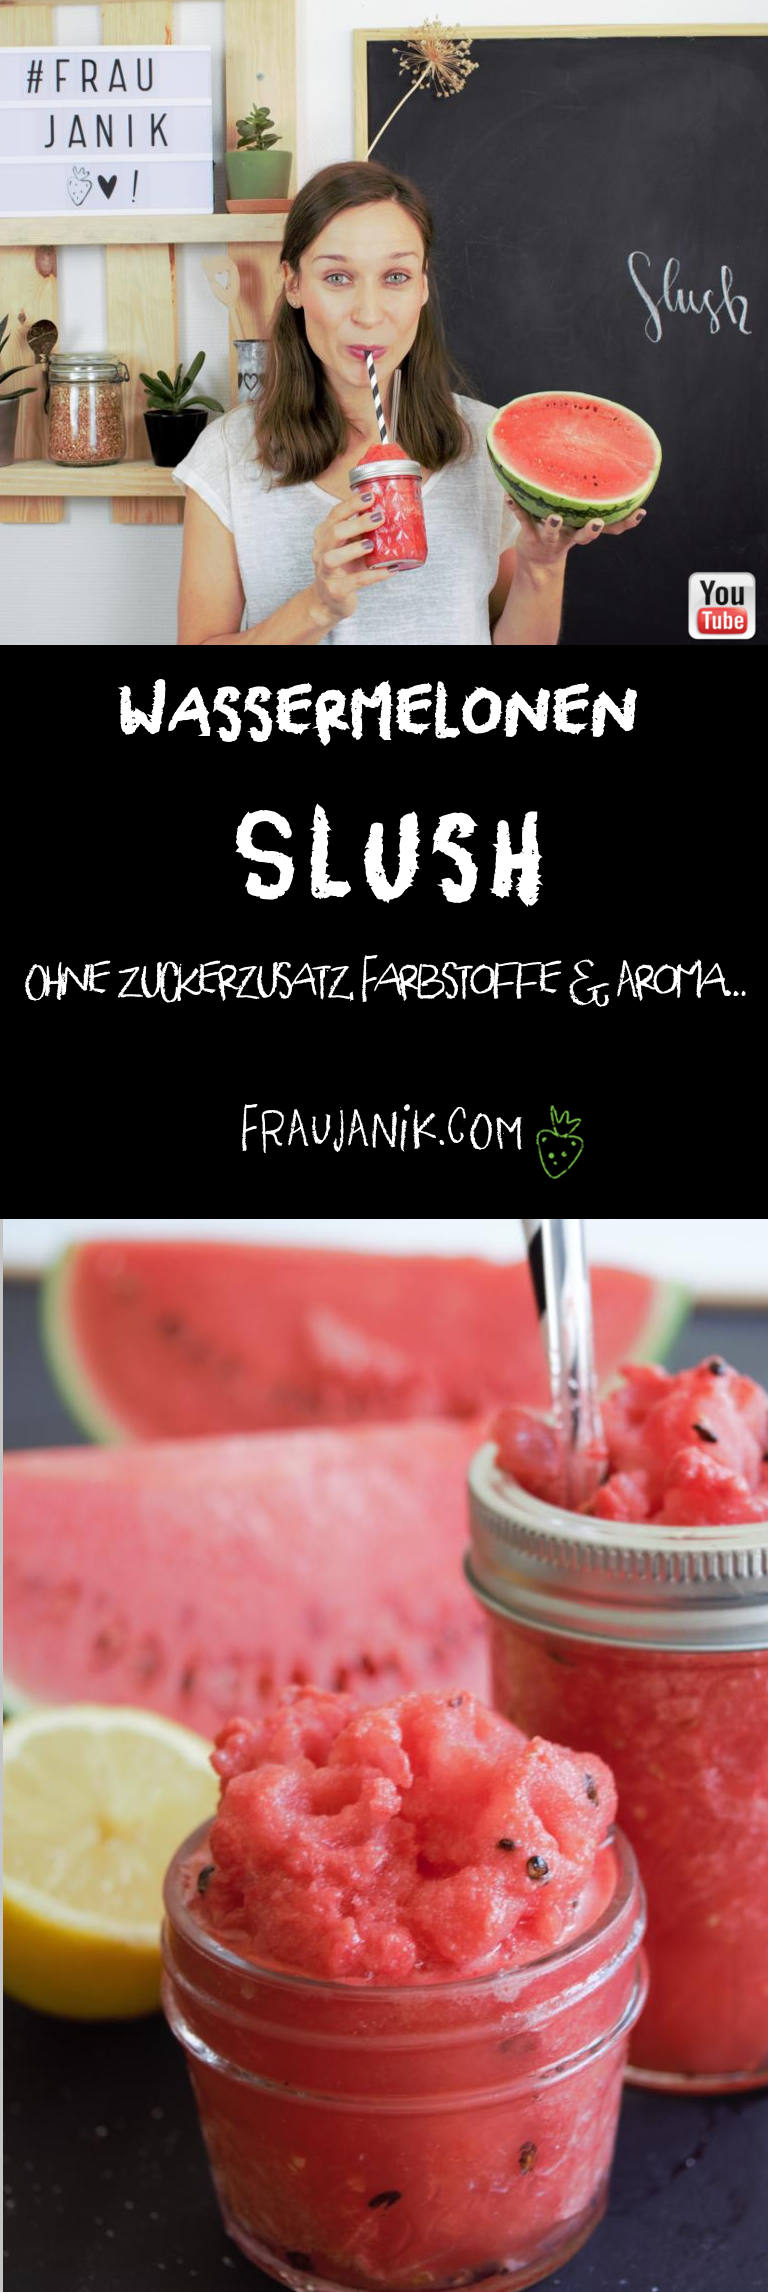 Slush Wassermelone